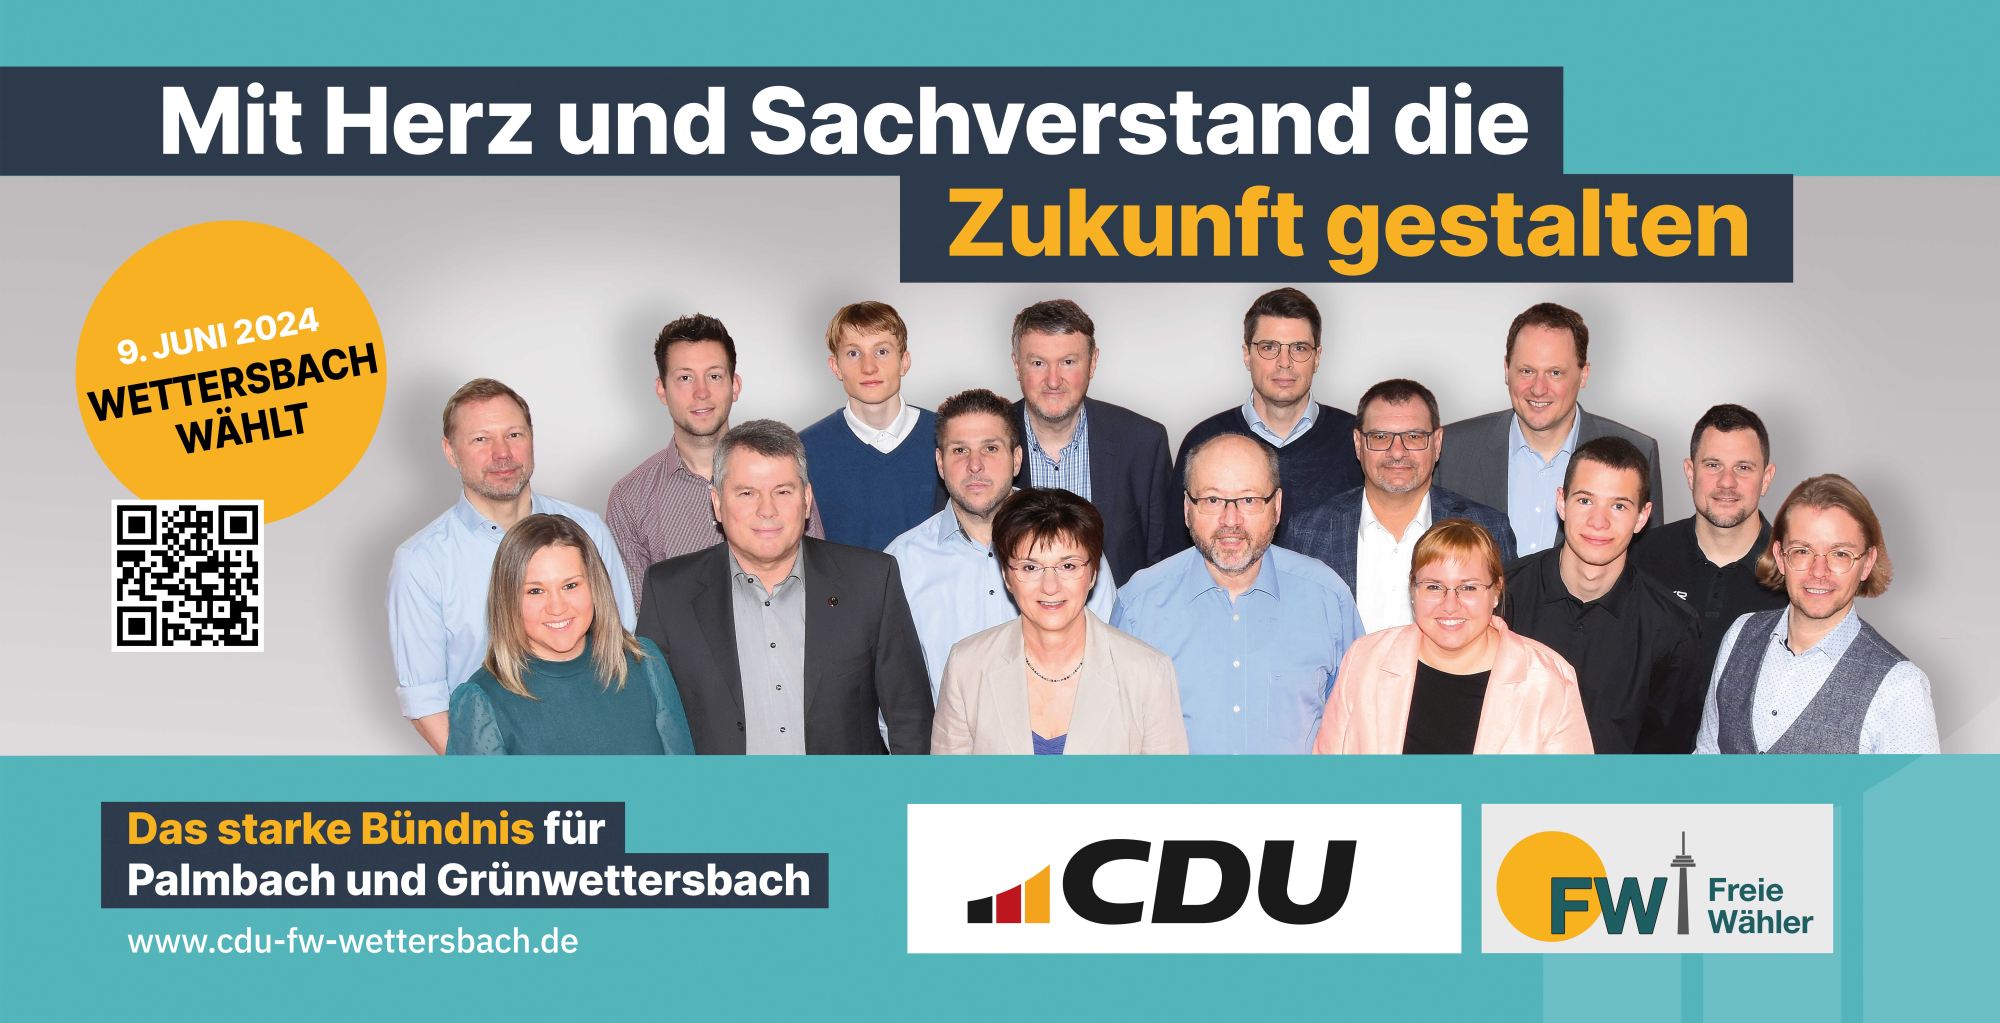 CDU/FW-Ortschaftsratsfraktion Wettersbach (Karlsruhe)